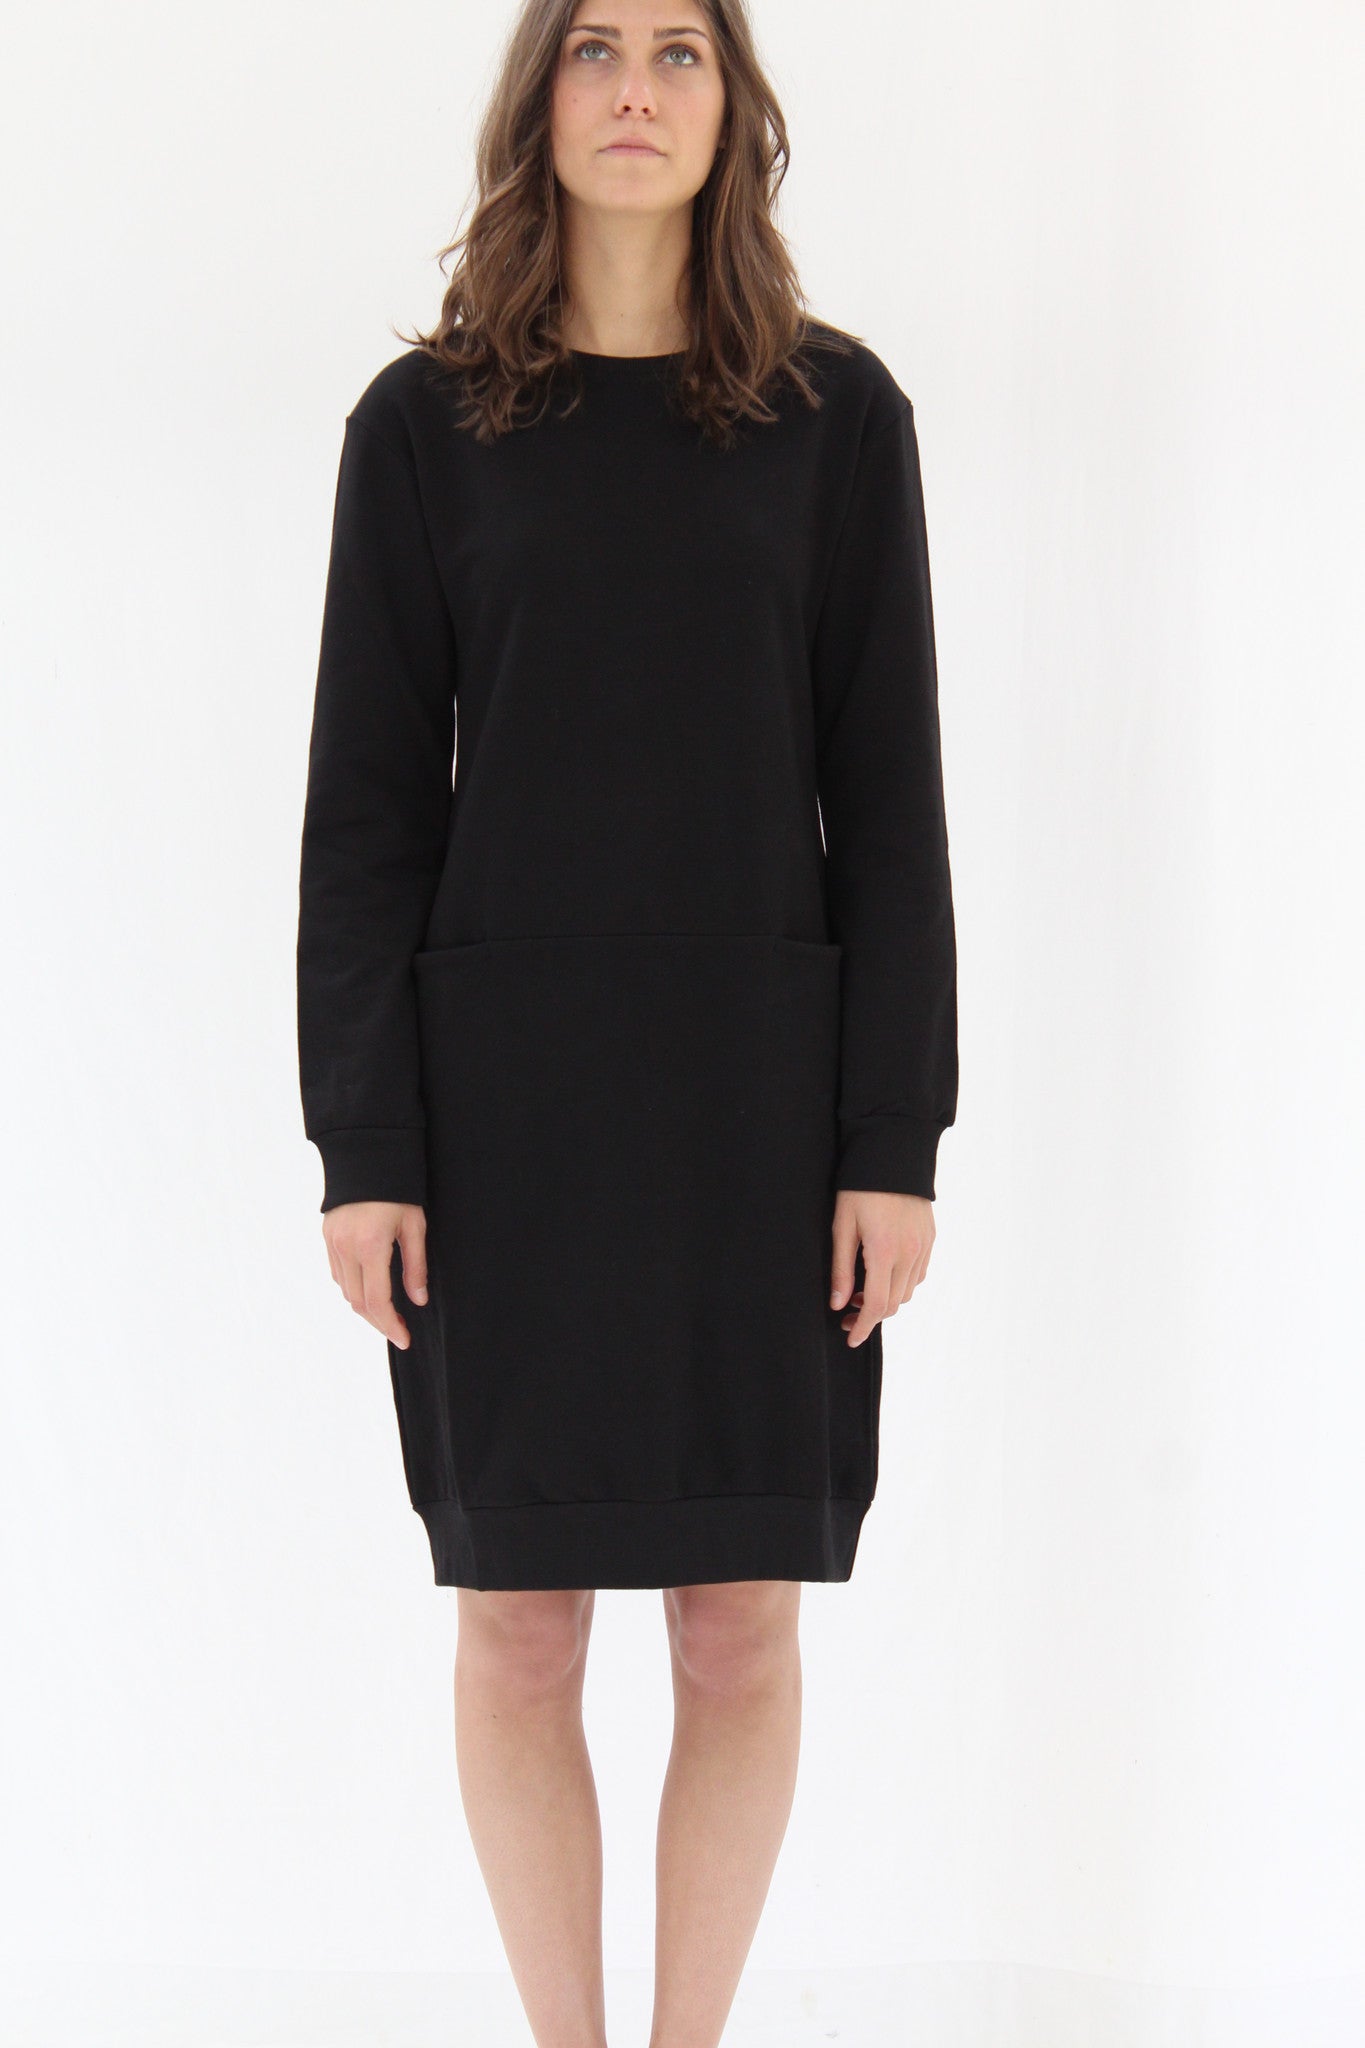 Kowtow Focus Dress Black – Beklina